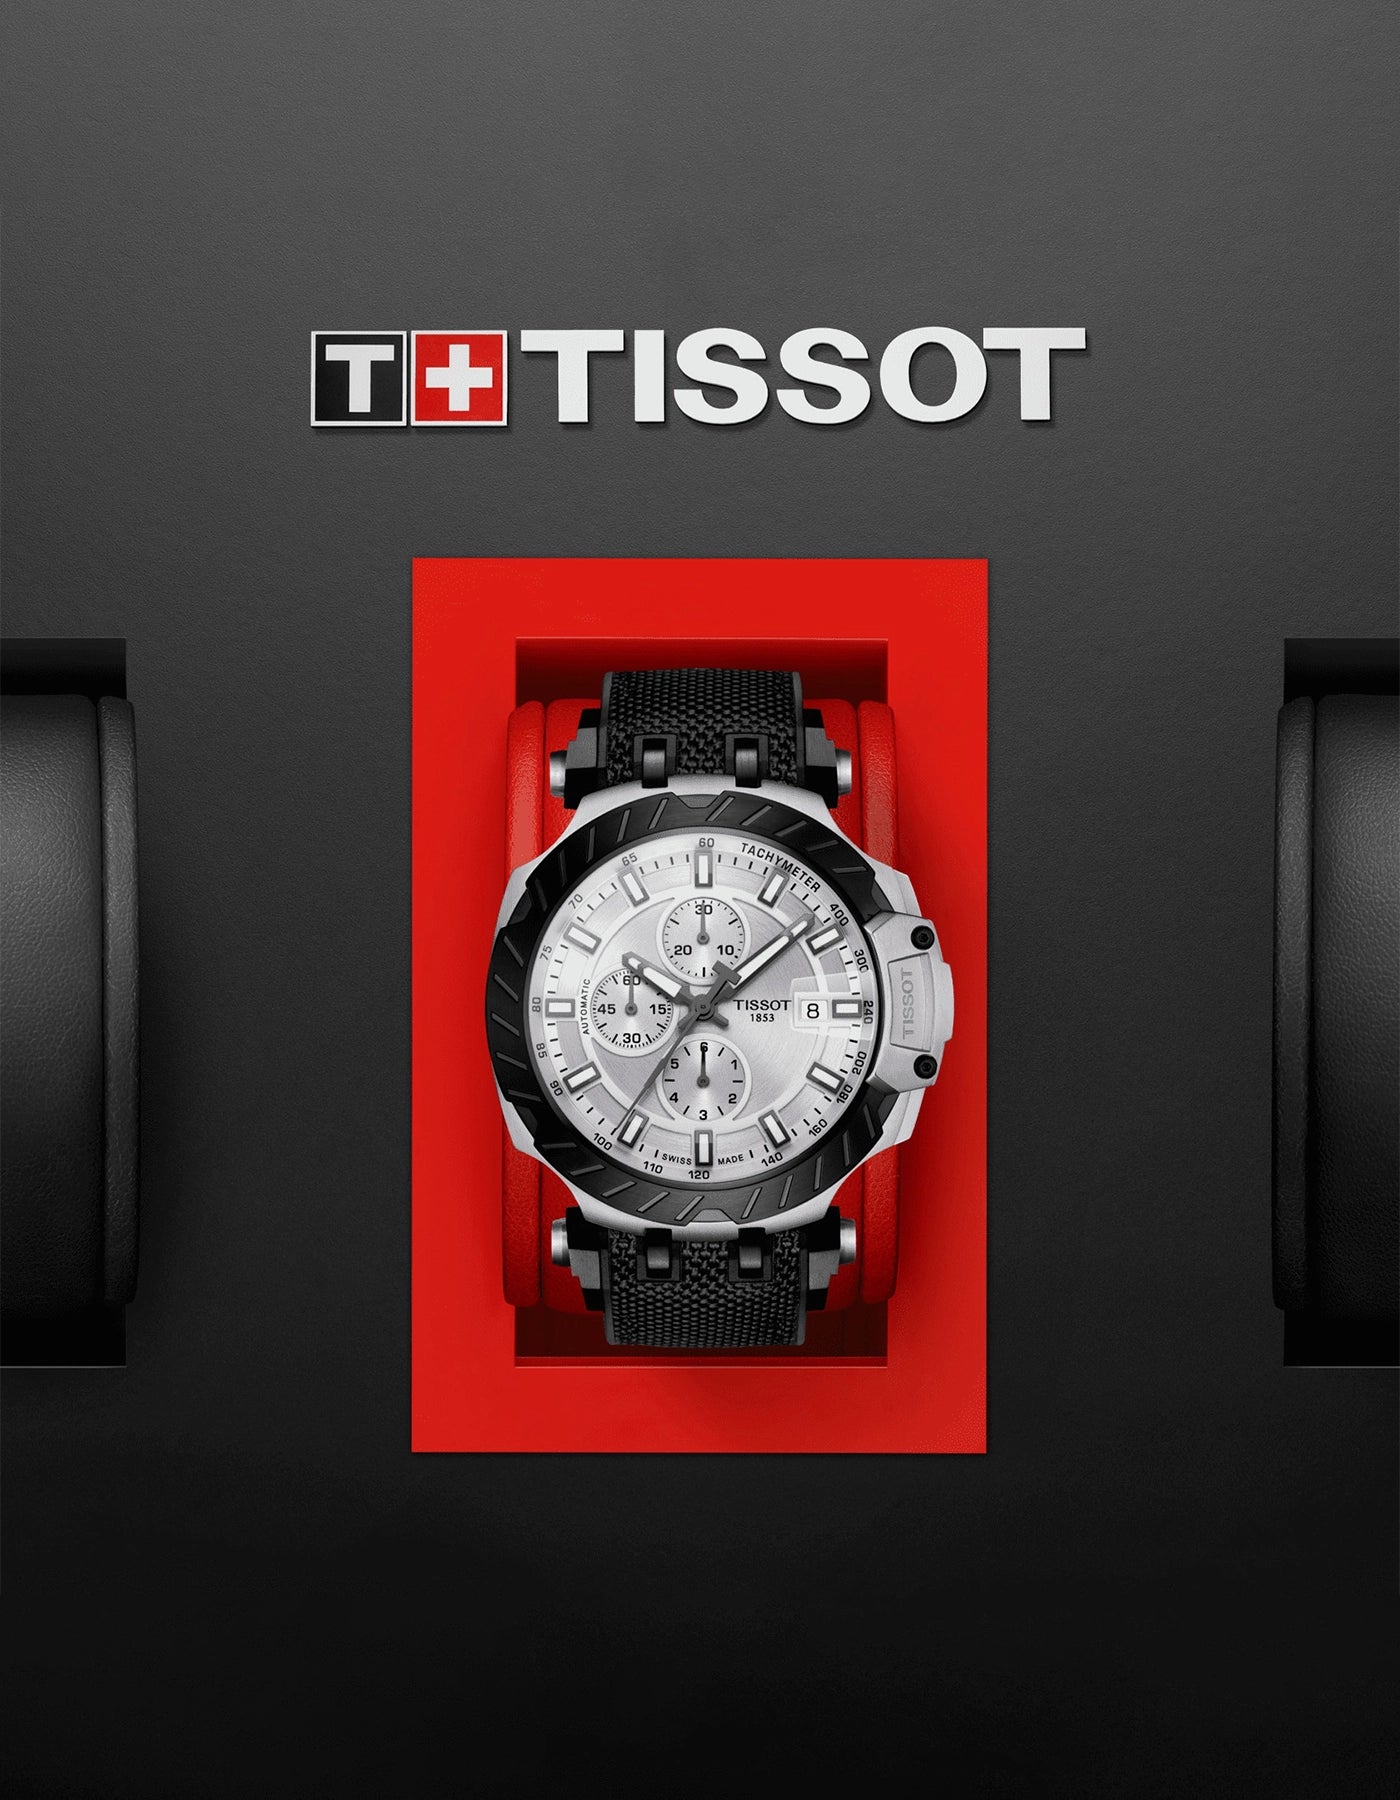 TISSOT T-RACE AUTOMATIC CHRONOGRAPH